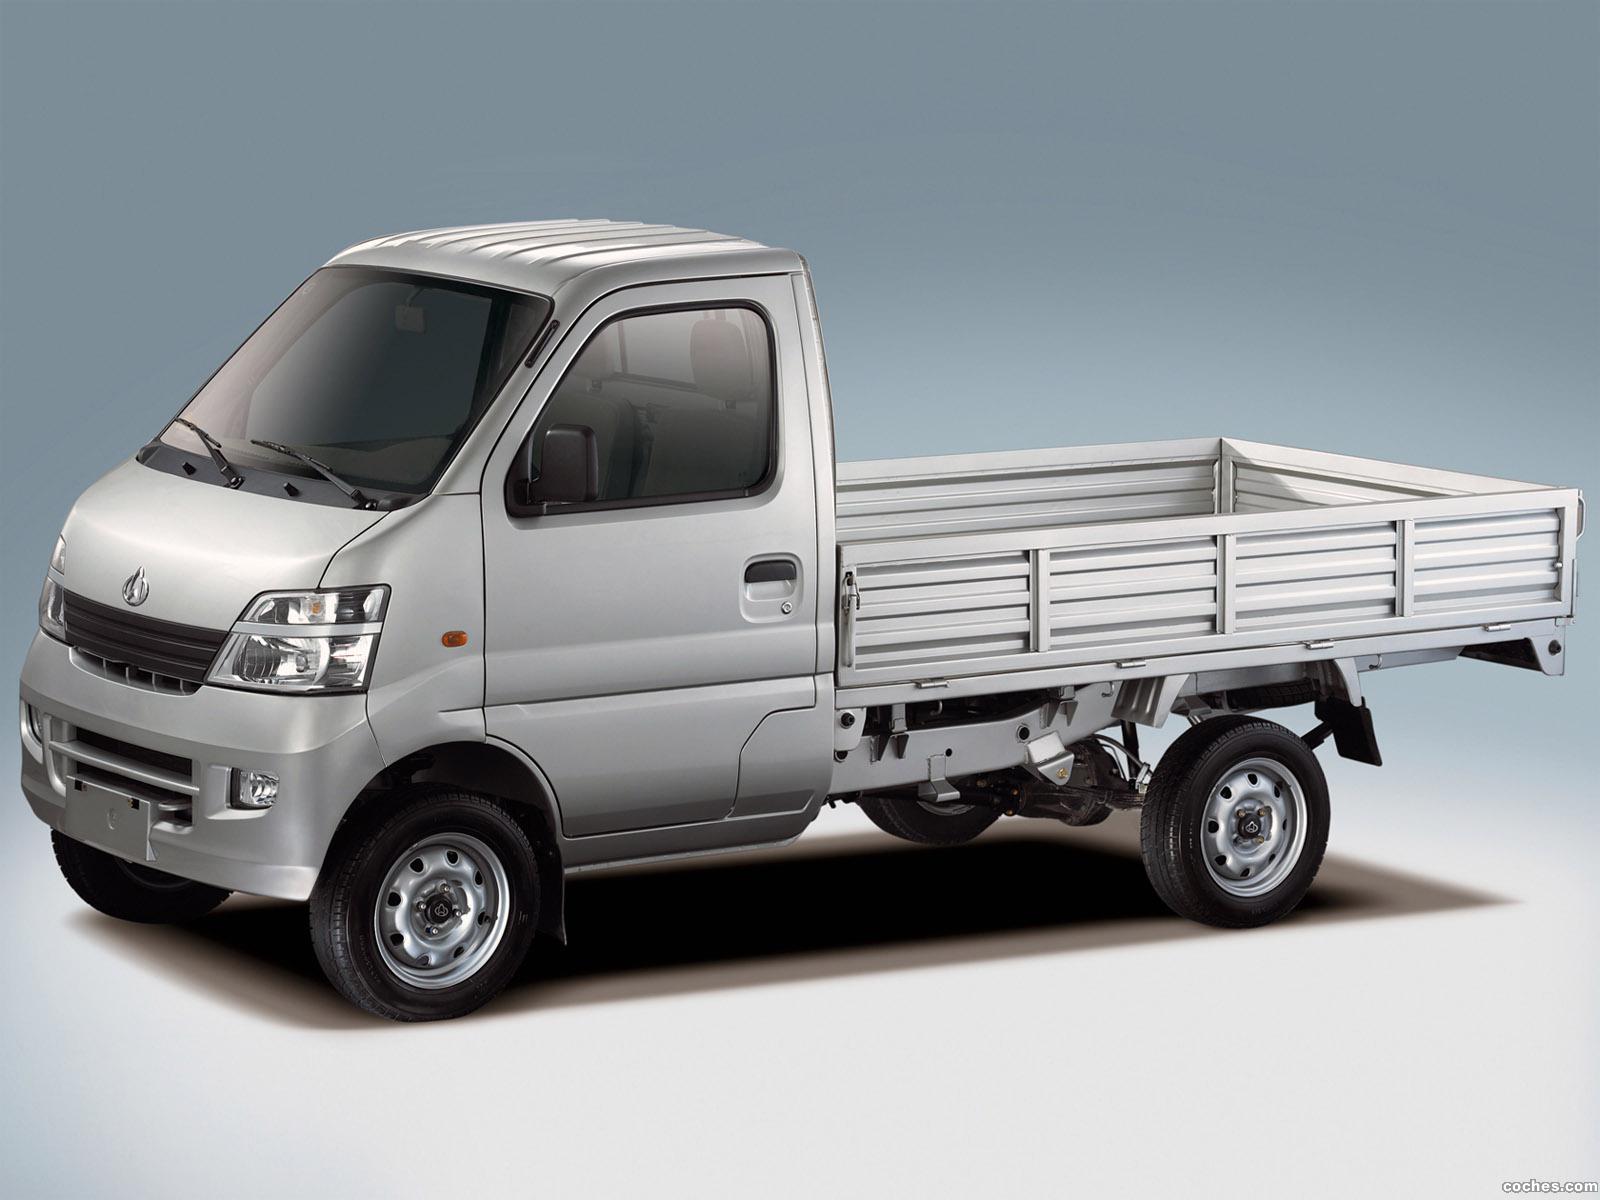 Купить мини грузовичок. JAC минигрузовик. Мини грузовой Джак Джак. Chana Changan Star Mini van. Мини грузовик Джак 1.5т.